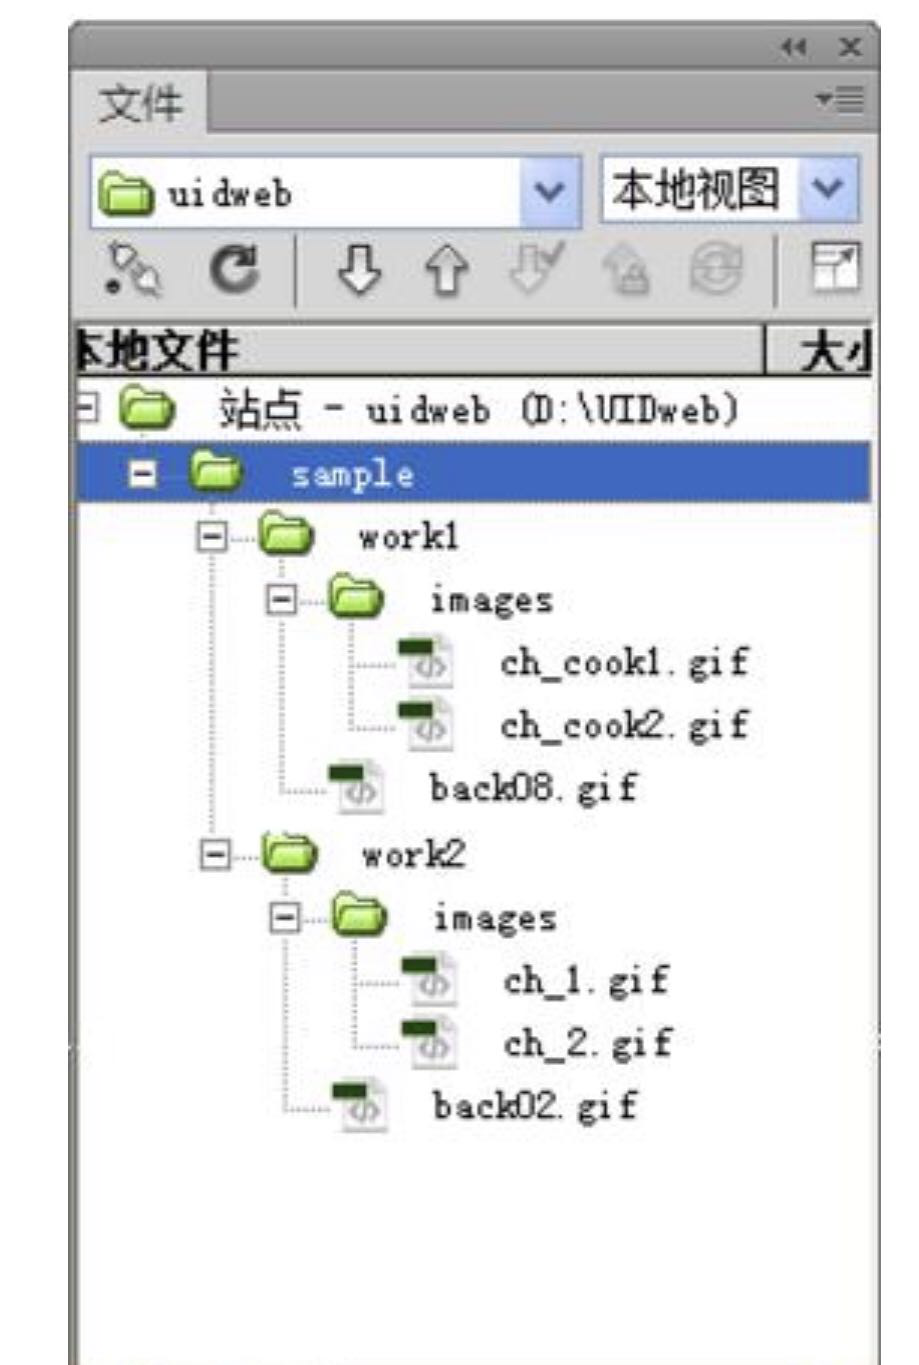 如图所示的文件夹结构。在samples文件夹下面有workl文件夹，workl文件夹下面有image